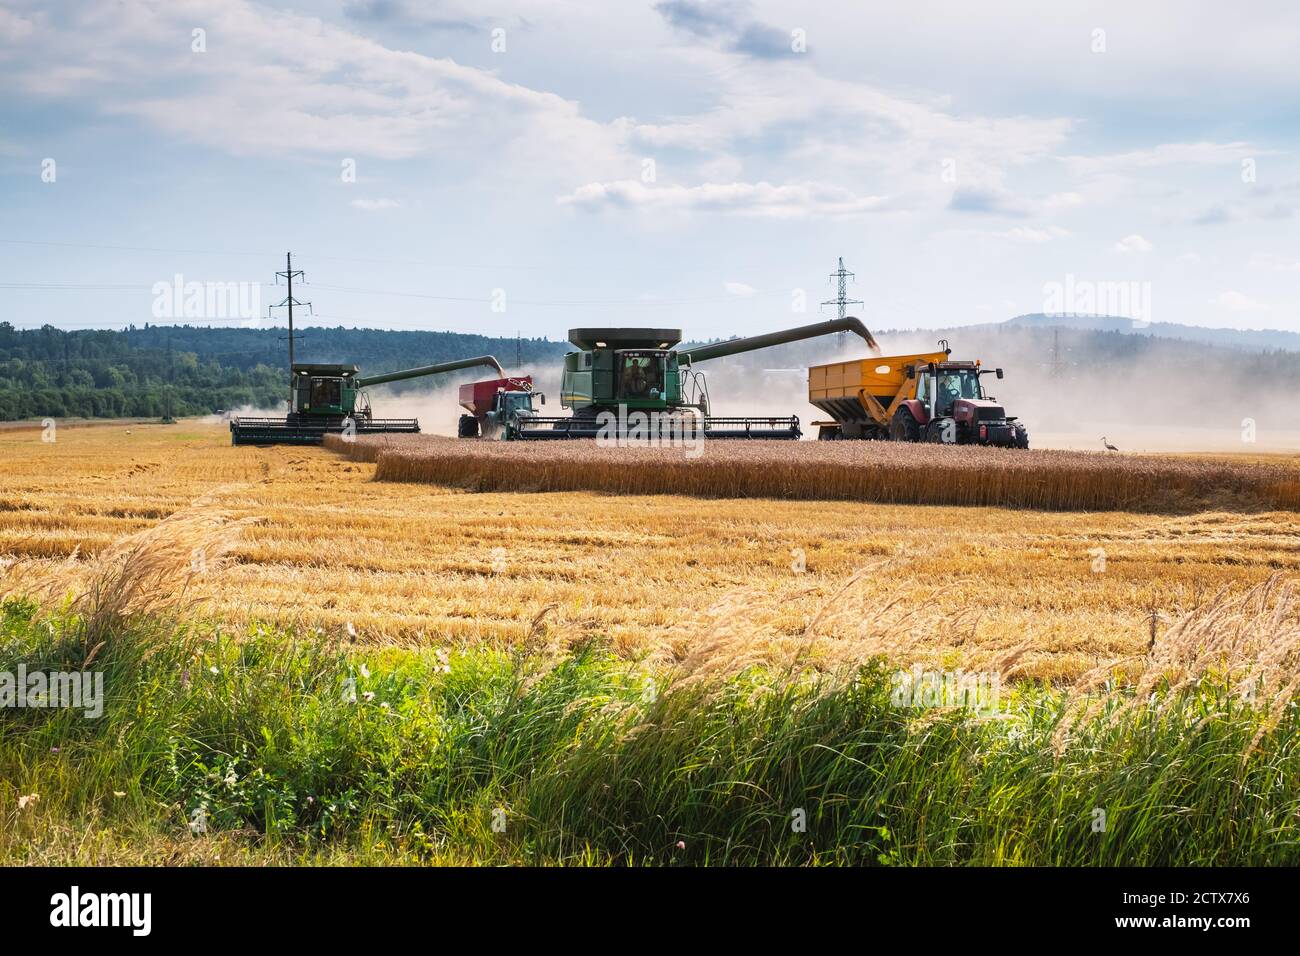 Récolte de blé en champ d'automne. Un tracteur moderne se trouve juste à côté de la moissonneuse-batteuse et transporte le grain de blé Banque D'Images